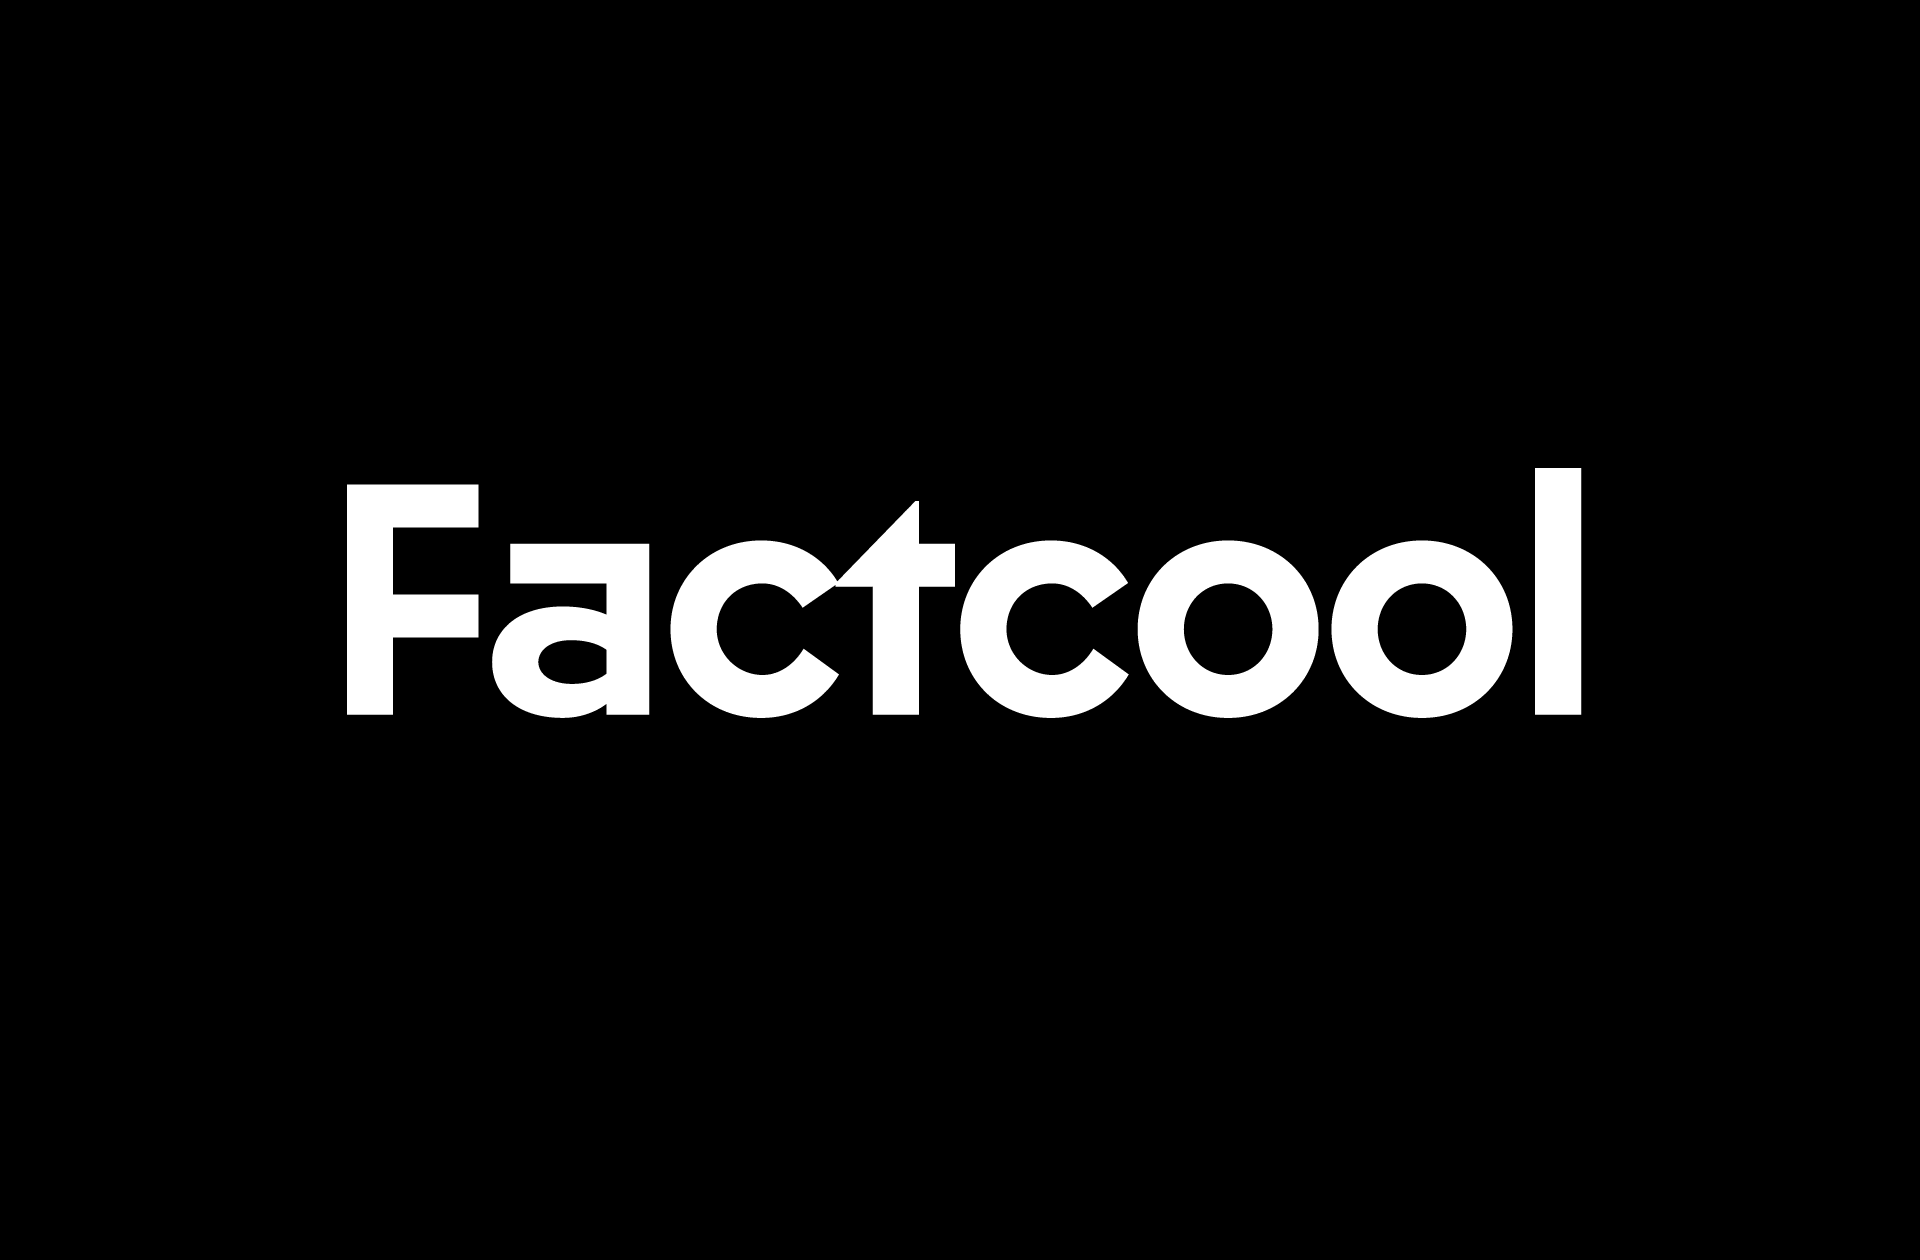 Custom Fonts: Factcool